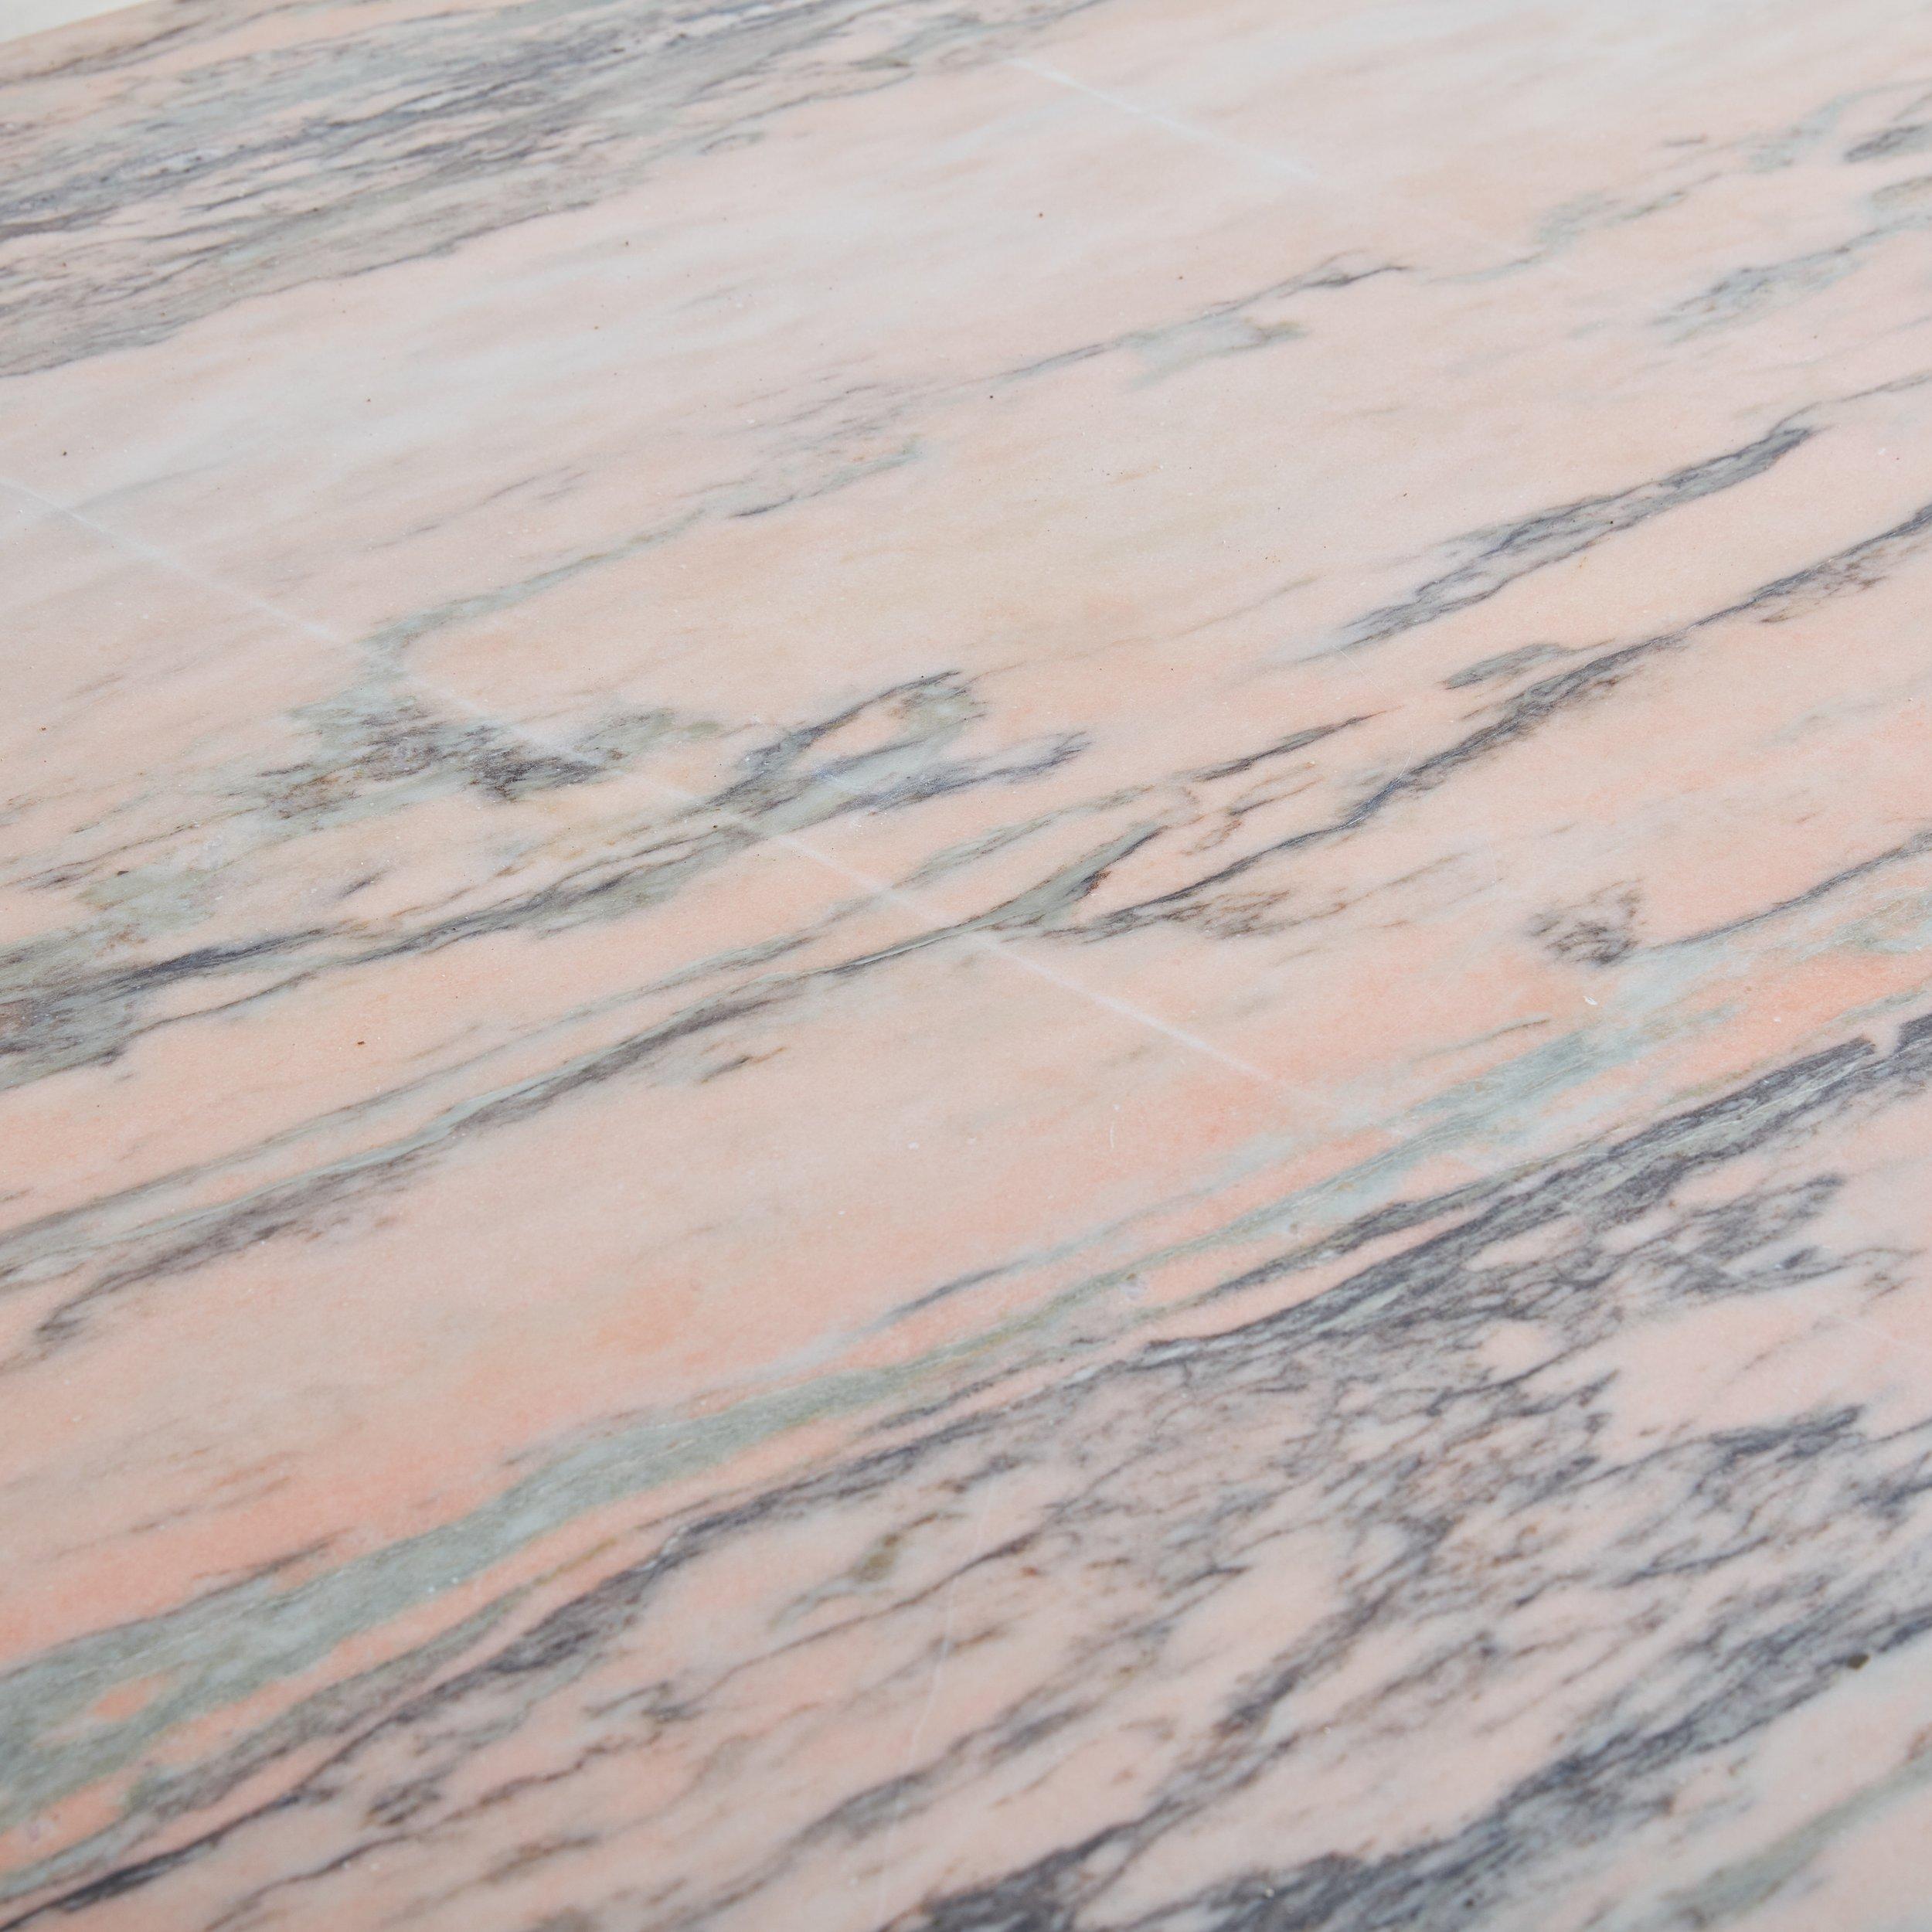 Table de salle à manger ovale en marbre rose portugais provenant d'Espagne, présentant une magnifique teinte rose avec des veines grises. Cette table a une finition adoucie et présente un plateau à bord arrondi et une base octogonale à facettes.